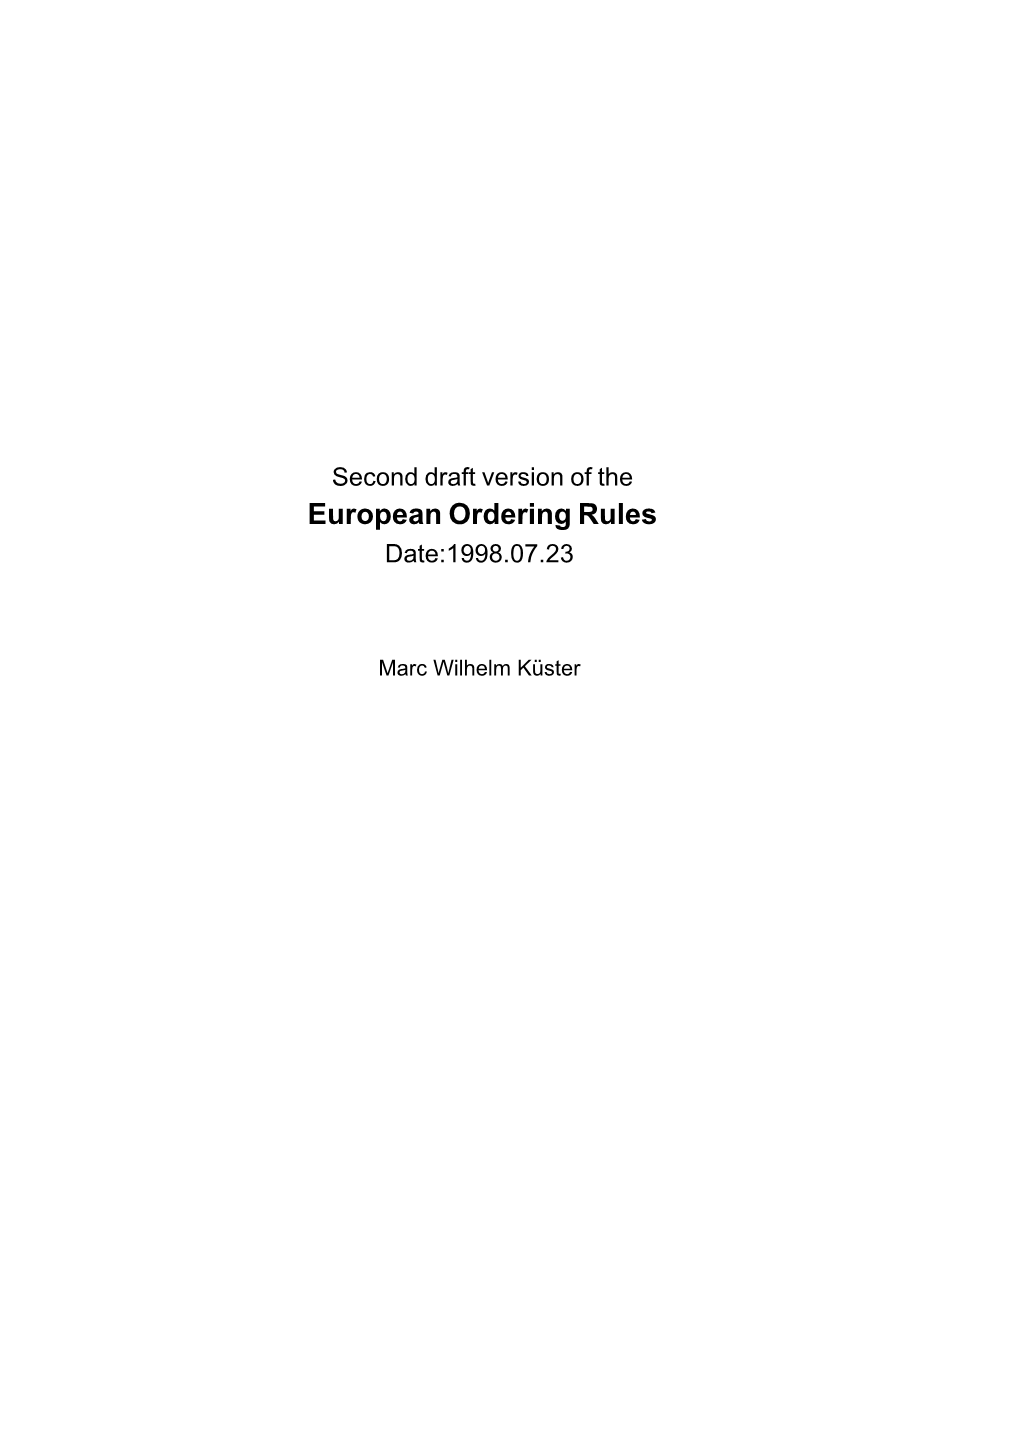 European Ordering Rules Date:1998.07.23